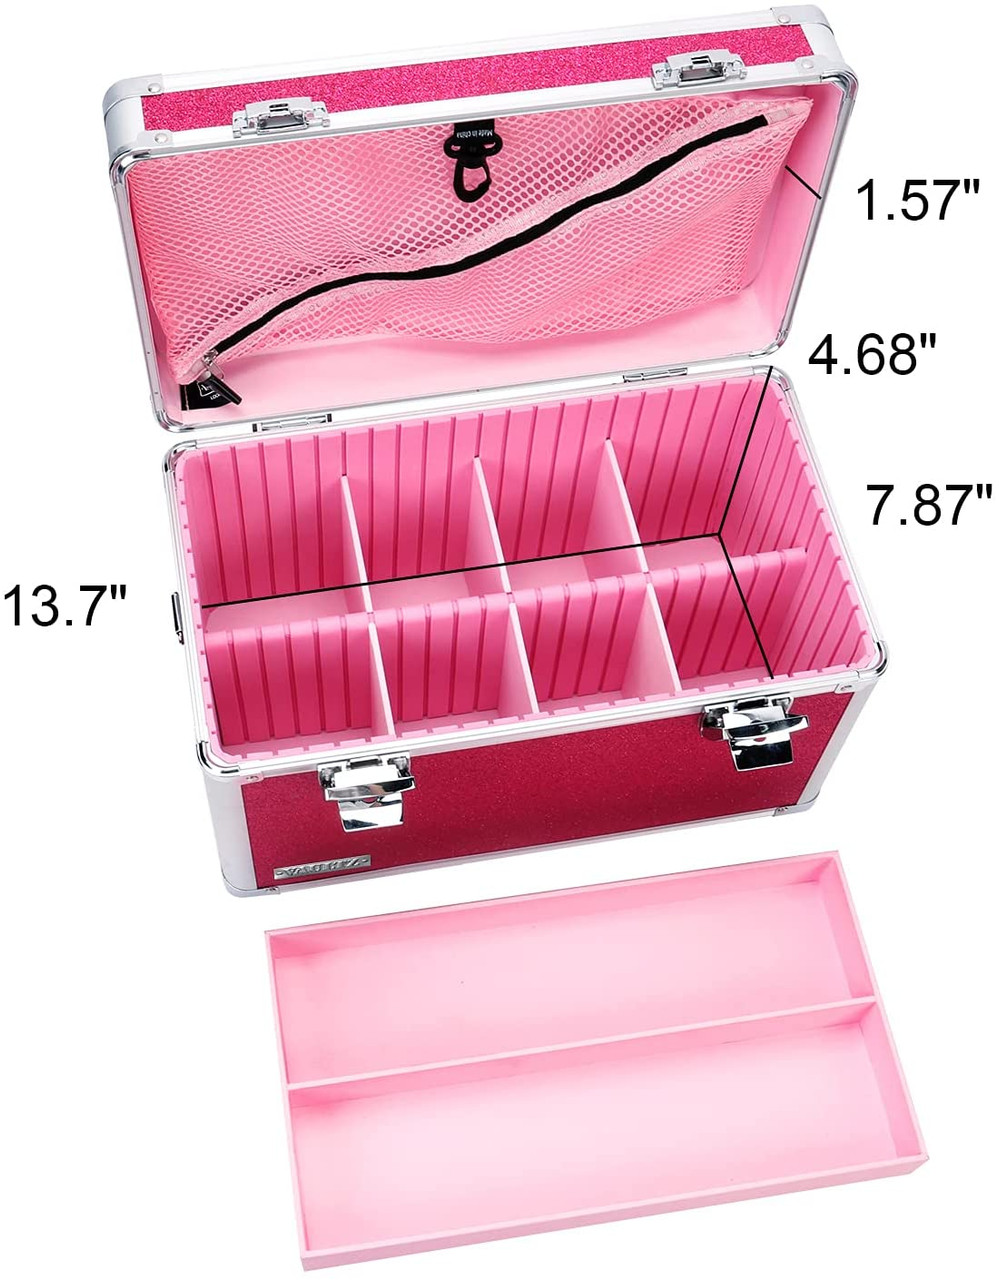 Vaultz Divided Storage, Large, Pink Bling